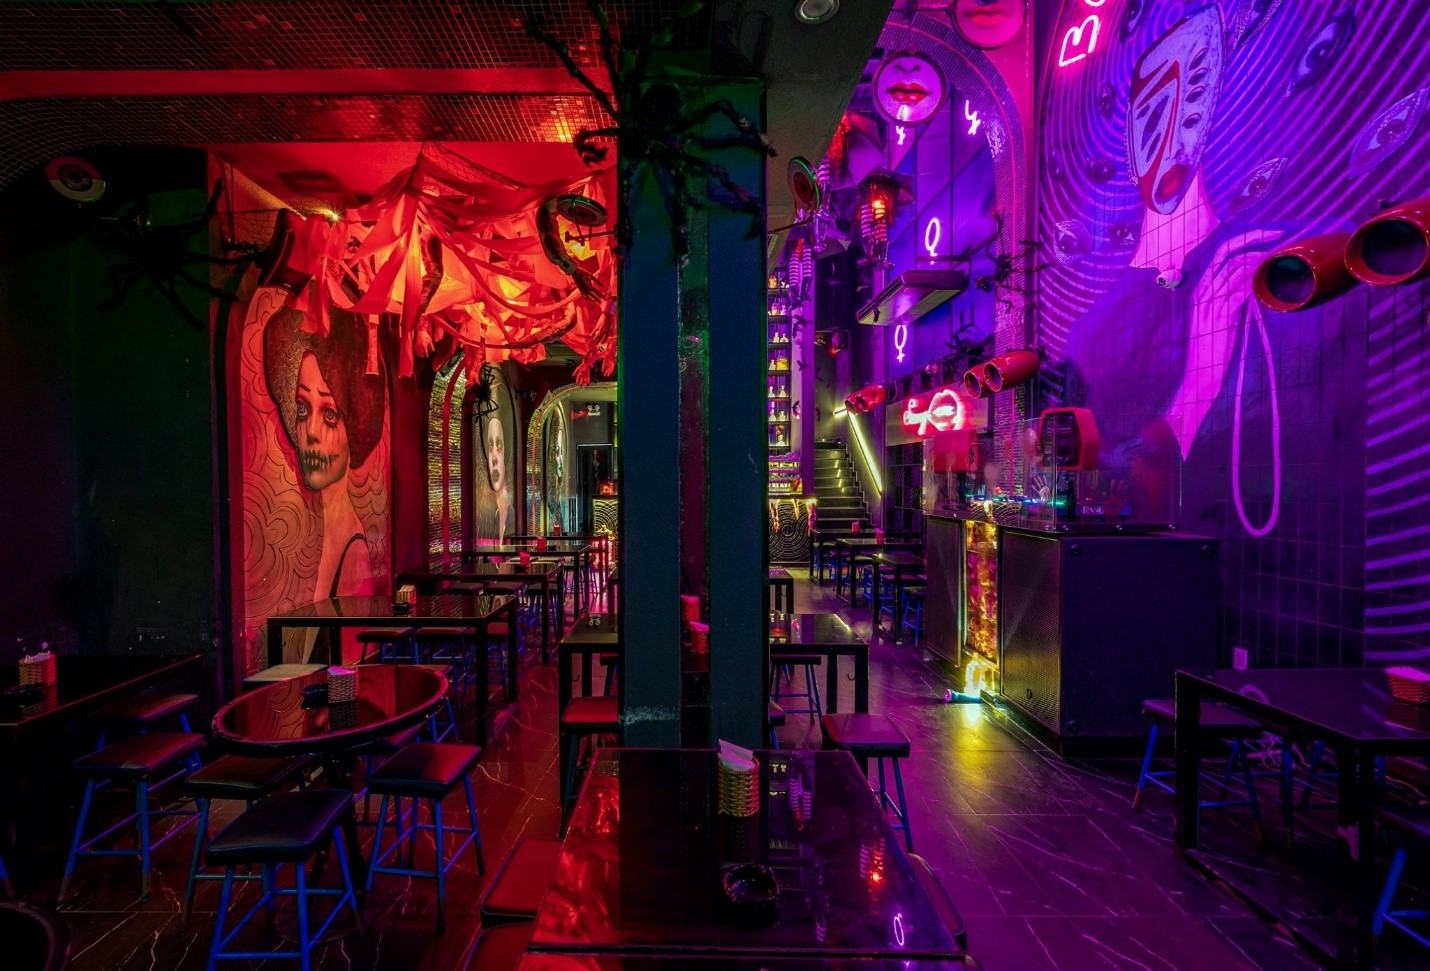 Top 16 quán Bar Sài Gòn nổi tiếng hấp dẫn, quẩy xuyên đêm